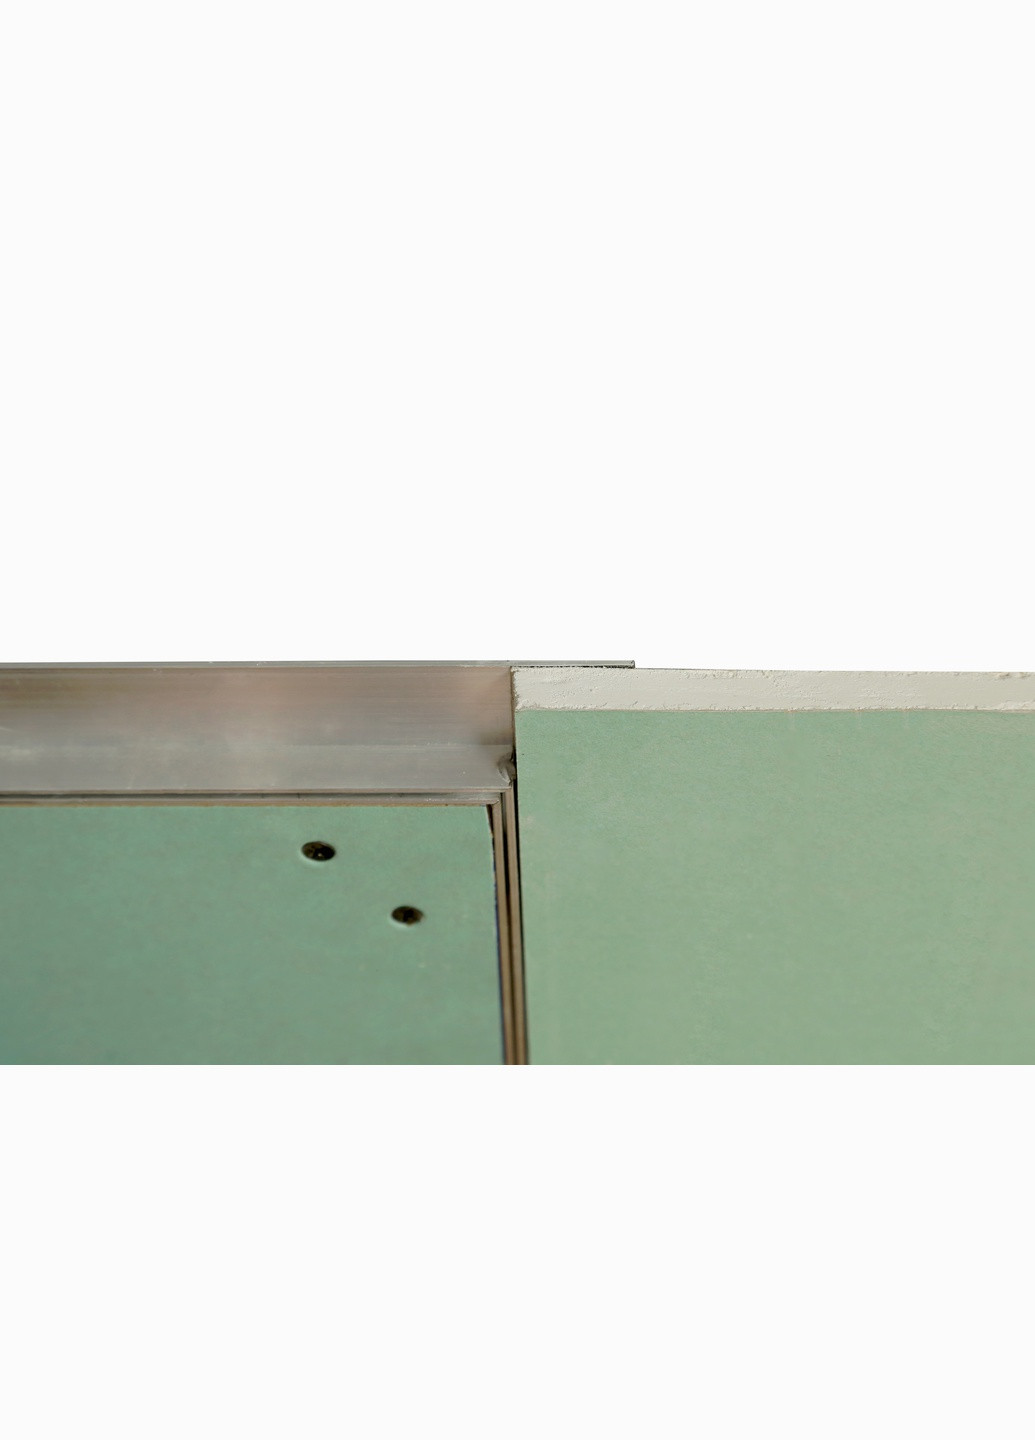 Ревізійний люк прихованого монтажу під фарбування (поклейку шпалер) типу СТАНДАРТ 500x1200 (1412) S-Dom (264208765)